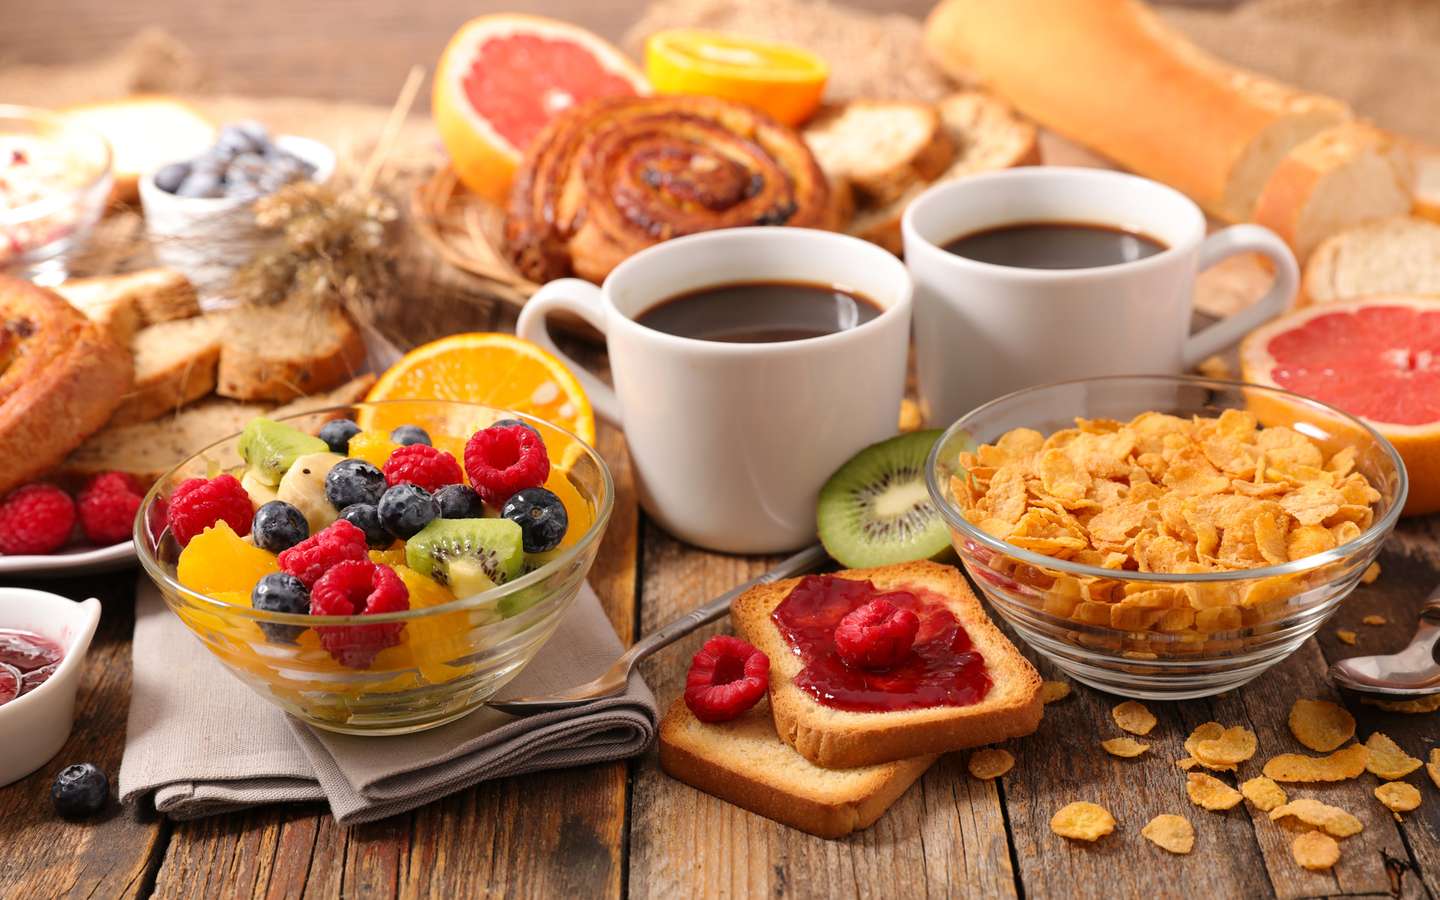 Minceur : voici 4 recettes de petit-déjeuner protéinés qui favorisent la  perte de poids, selon une nutritionniste